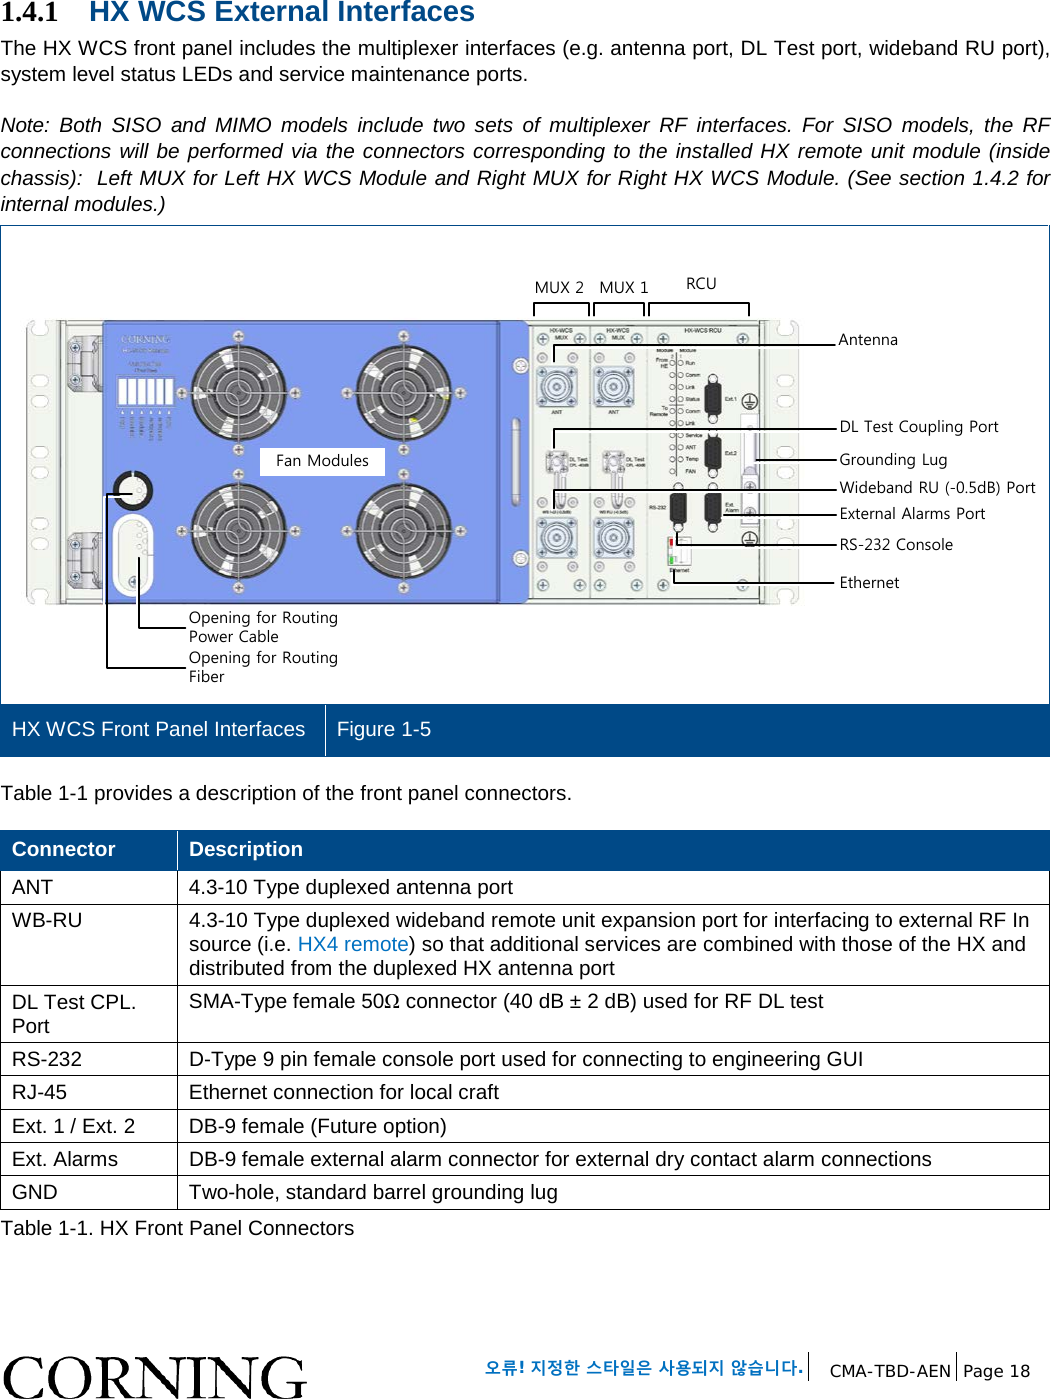   오류! 지정한 스타일은 사용되지 않습니다. CMA-TBD-AEN Page 18   1.4.1 HX WCS External Interfaces  The HX WCS front panel includes the multiplexer interfaces (e.g. antenna port, DL Test port, wideband RU port), system level status LEDs and service maintenance ports.  Note:  Both SISO and MIMO models include two sets of multiplexer RF interfaces. For SISO models, the RF connections will be performed via the connectors corresponding to the installed HX remote unit module (inside chassis):  Left MUX for Left HX WCS Module and Right MUX for Right HX WCS Module. (See section 1.4.2 for internal modules.)   HX WCS Front Panel Interfaces Figure 1-5  Table 1-1 provides a description of the front panel connectors. Connector Description ANT 4.3-10 Type duplexed antenna port WB-RU 4.3-10 Type duplexed wideband remote unit expansion port for interfacing to external RF In source (i.e. HX4 remote) so that additional services are combined with those of the HX and distributed from the duplexed HX antenna port  DL Test CPL. Port SMA-Type female 50Ω connector (40 dB ± 2 dB) used for RF DL test  RS-232  D-Type 9 pin female console port used for connecting to engineering GUI RJ-45 Ethernet connection for local craft Ext. 1 / Ext. 2 DB-9 female (Future option) Ext. Alarms DB-9 female external alarm connector for external dry contact alarm connections GND  Two-hole, standard barrel grounding lug Table 1-1. HX Front Panel Connectors    Fan ModulesMUX 1MUX 2Opening for Routing Power CableOpening for Routing FiberAntennaDL Test Coupling PortRS-232 ConsoleEthernetRCUGrounding LugWideband RU (-0.5dB) PortExternal Alarms Port